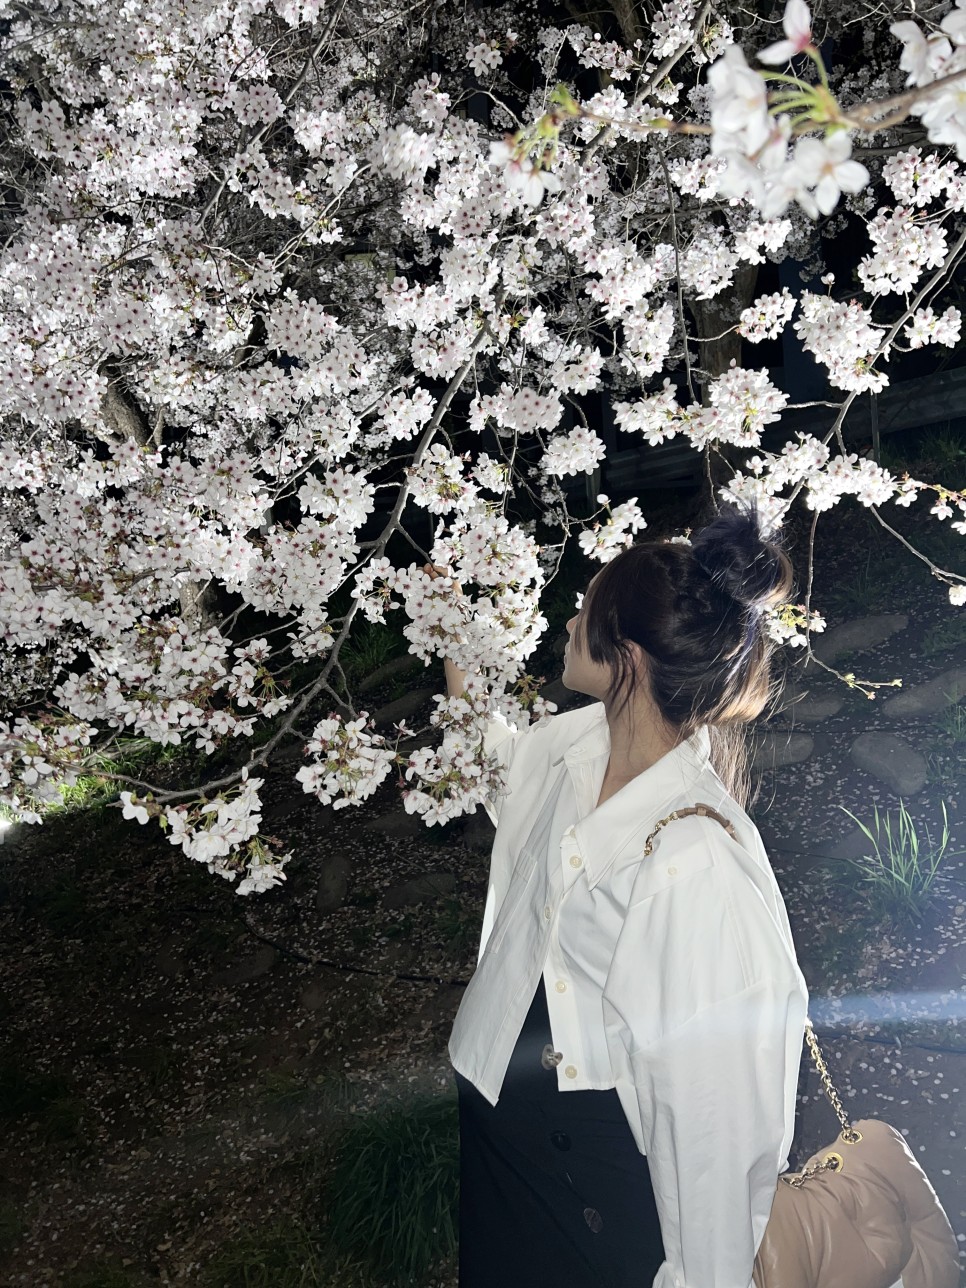 천안 벚꽃 명소 원성천 사진스팟 공유 ! 밤산책하기 딱 좋아